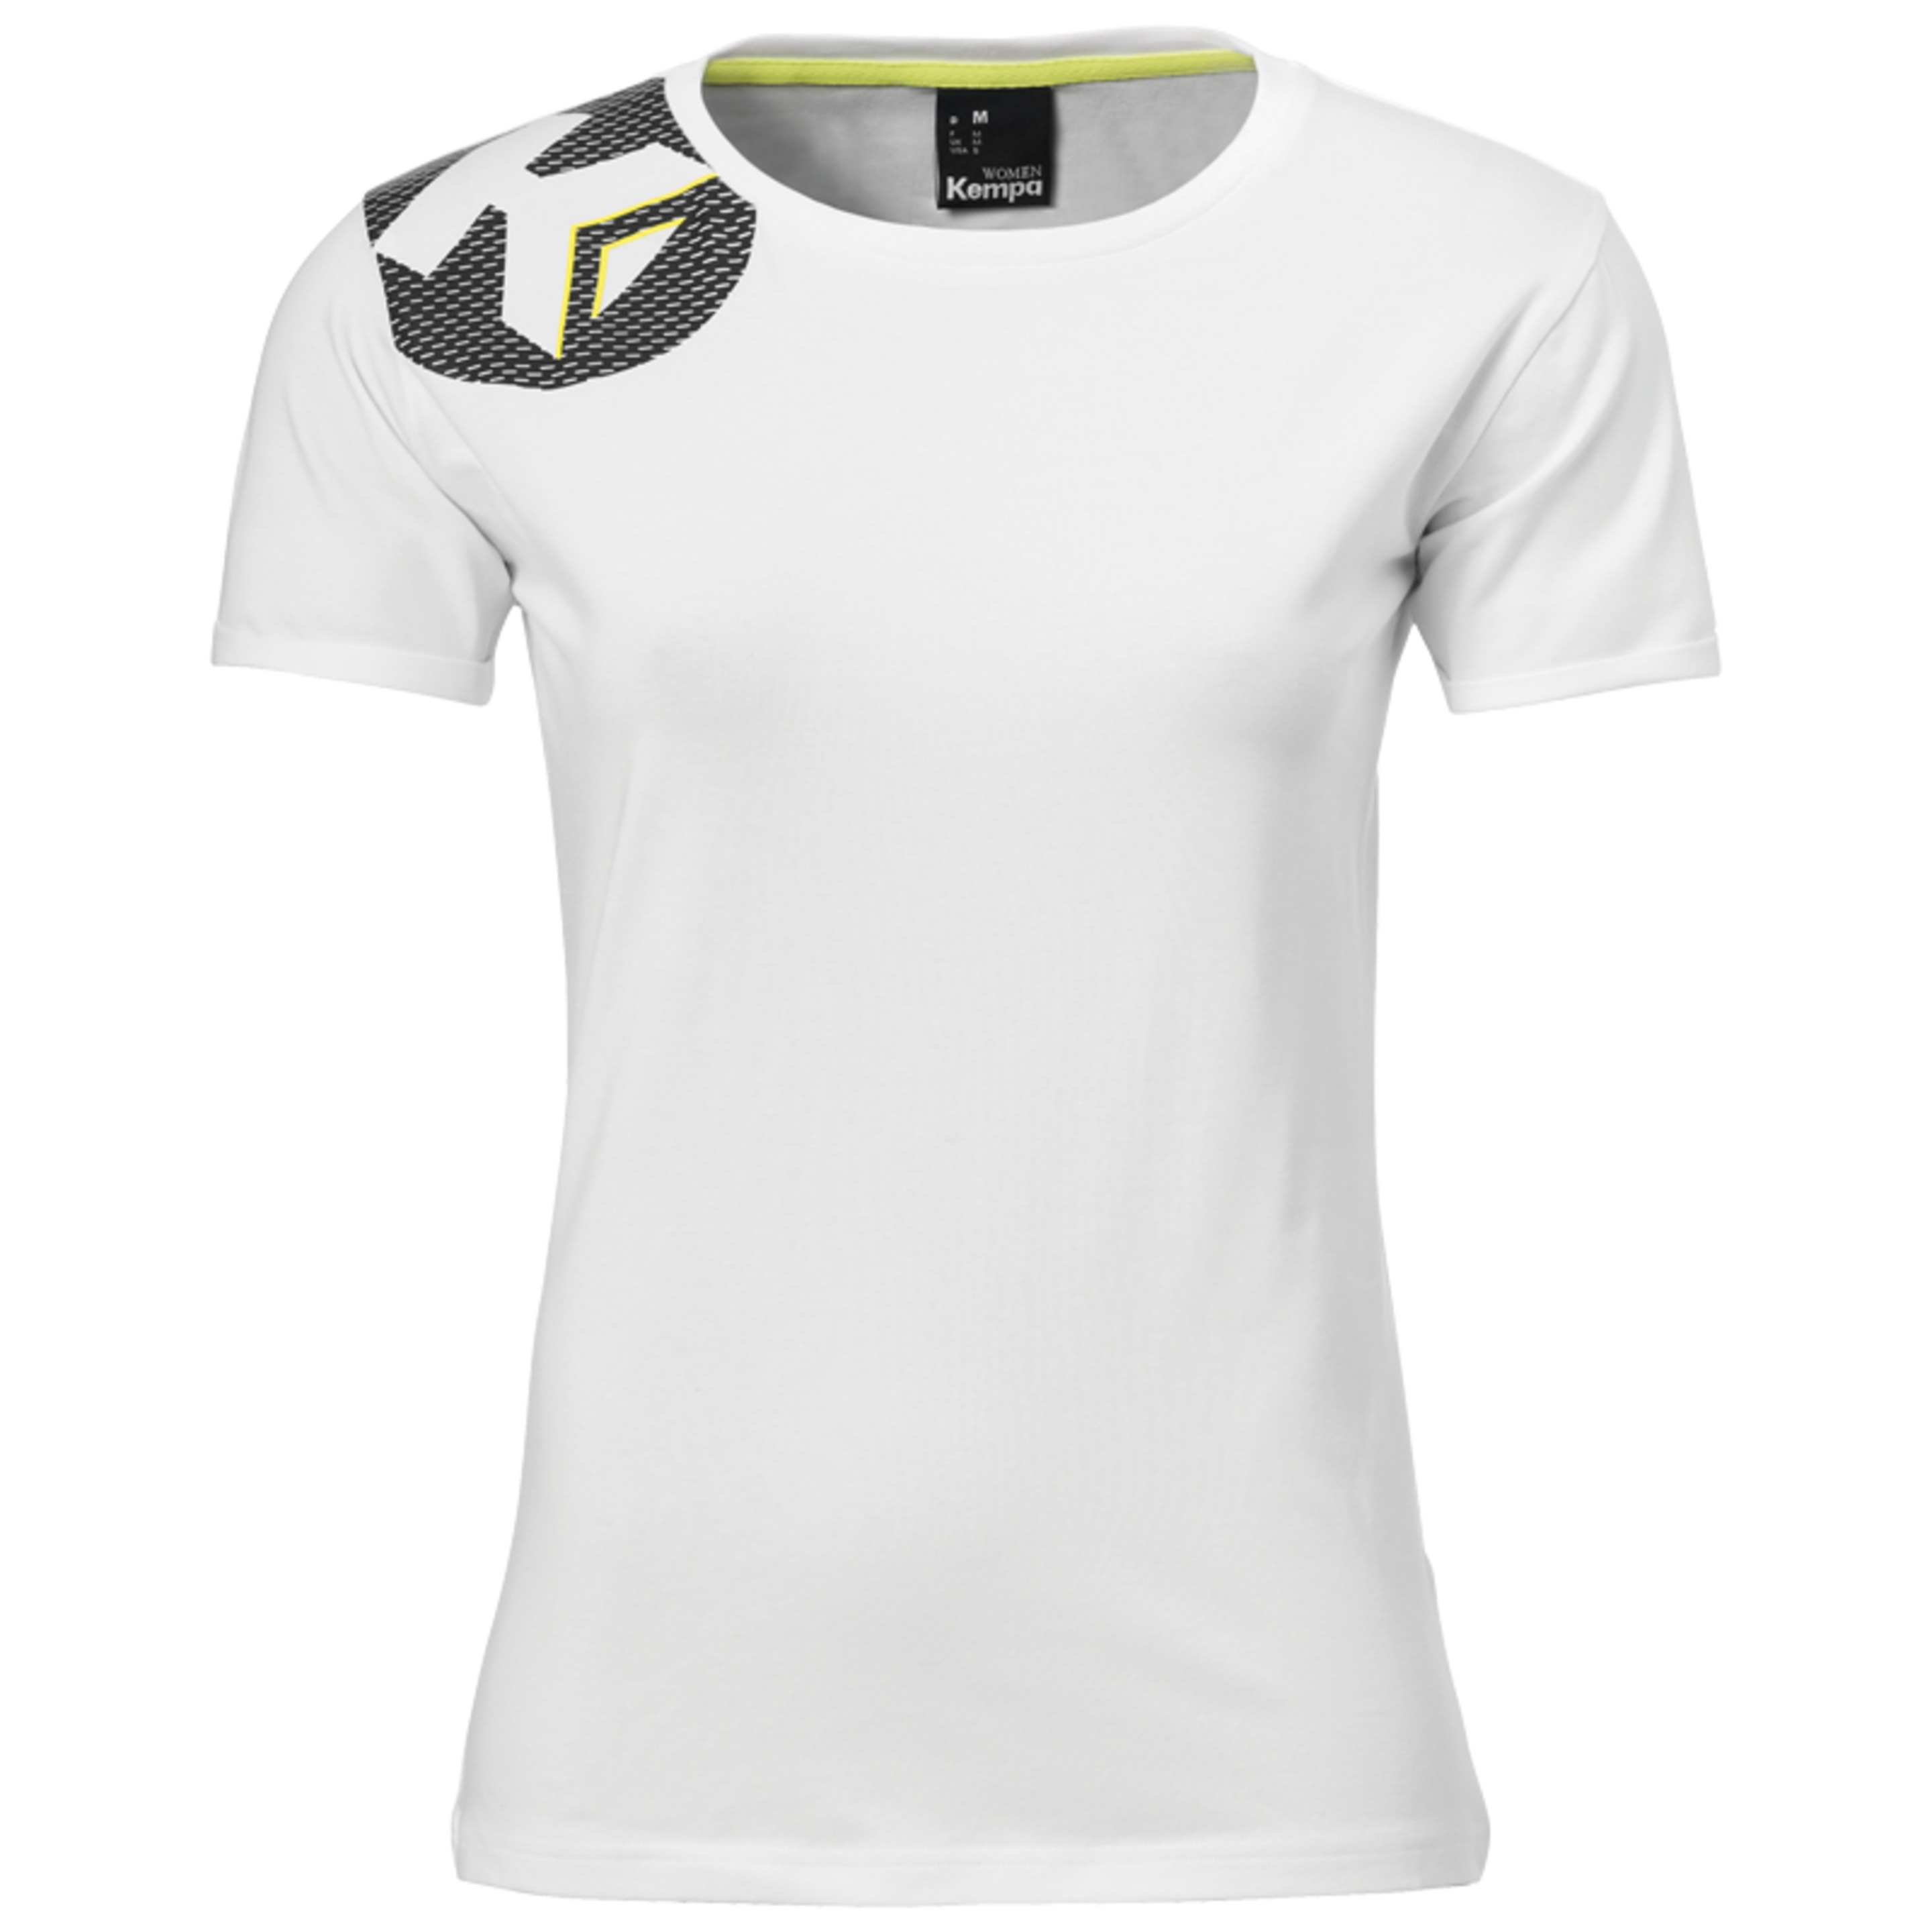 Core 2.0 T-shirt Women Blanco Kempa - blanco - Core 2.0 T-shirt Women Blanco Kempa  MKP